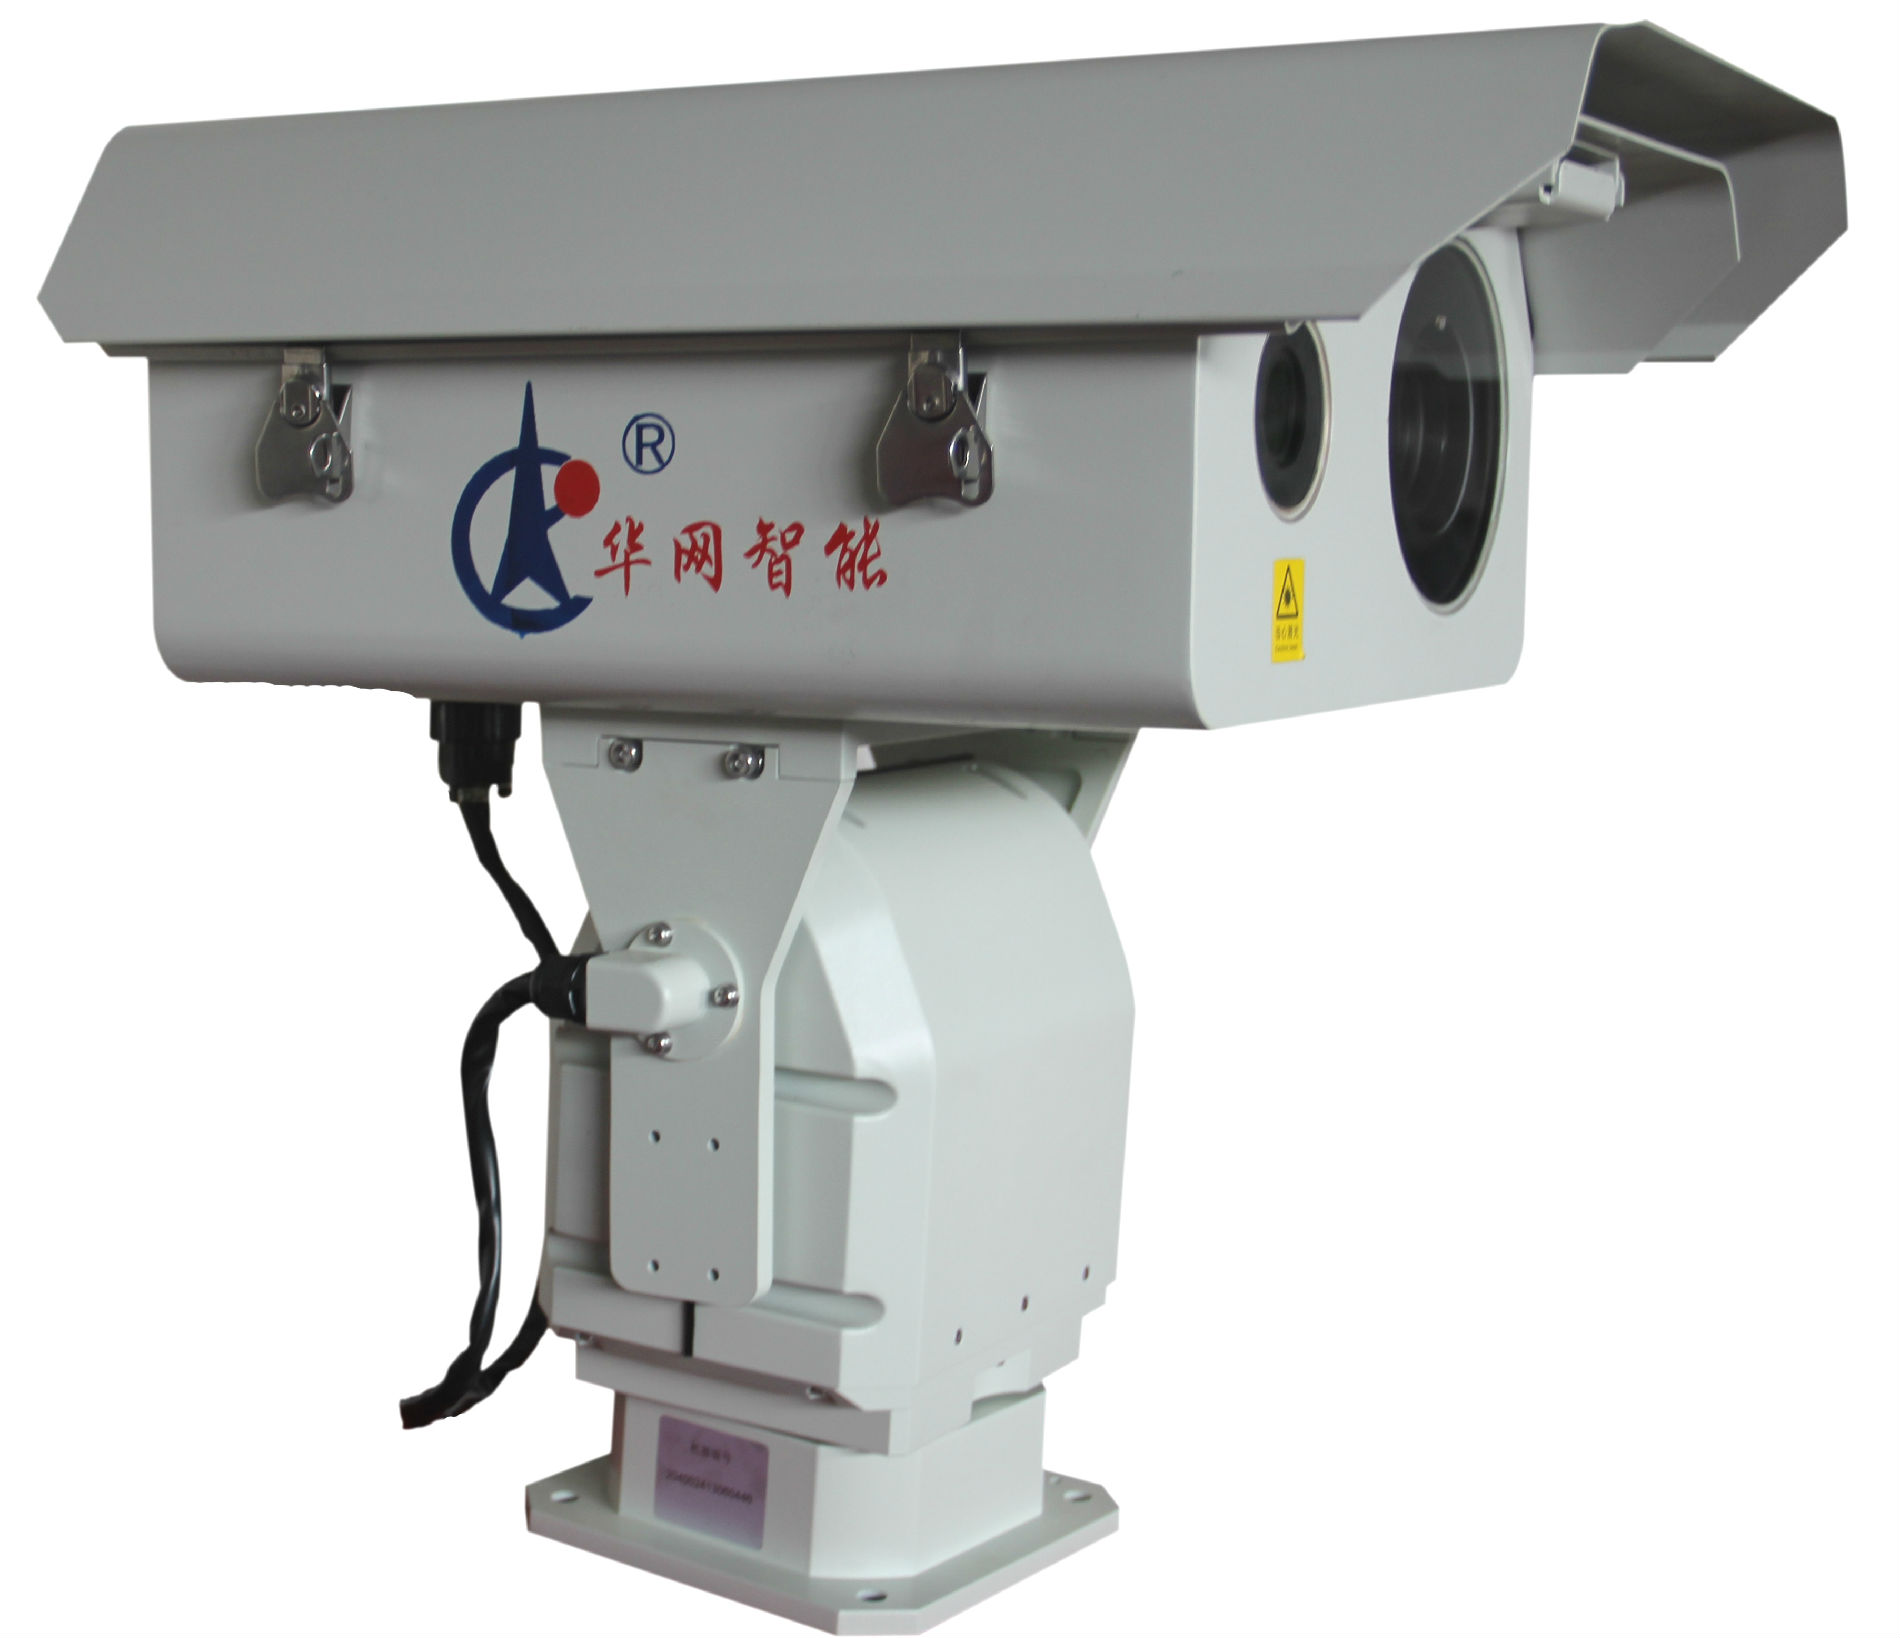 华网智能HW-YJY-1500GQ型高清激光夜视仪